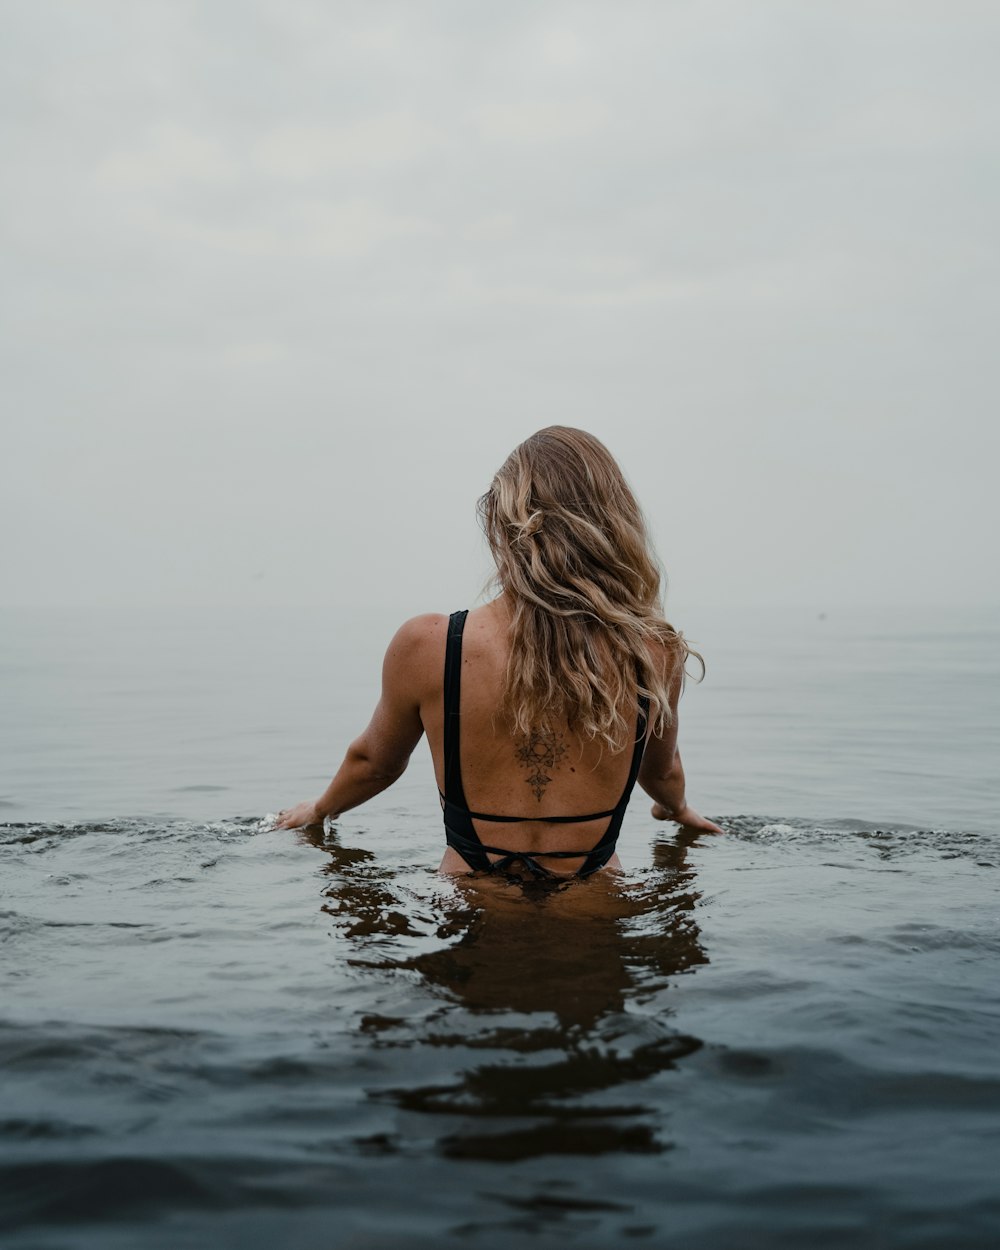 woman in black bikini on water during daytime